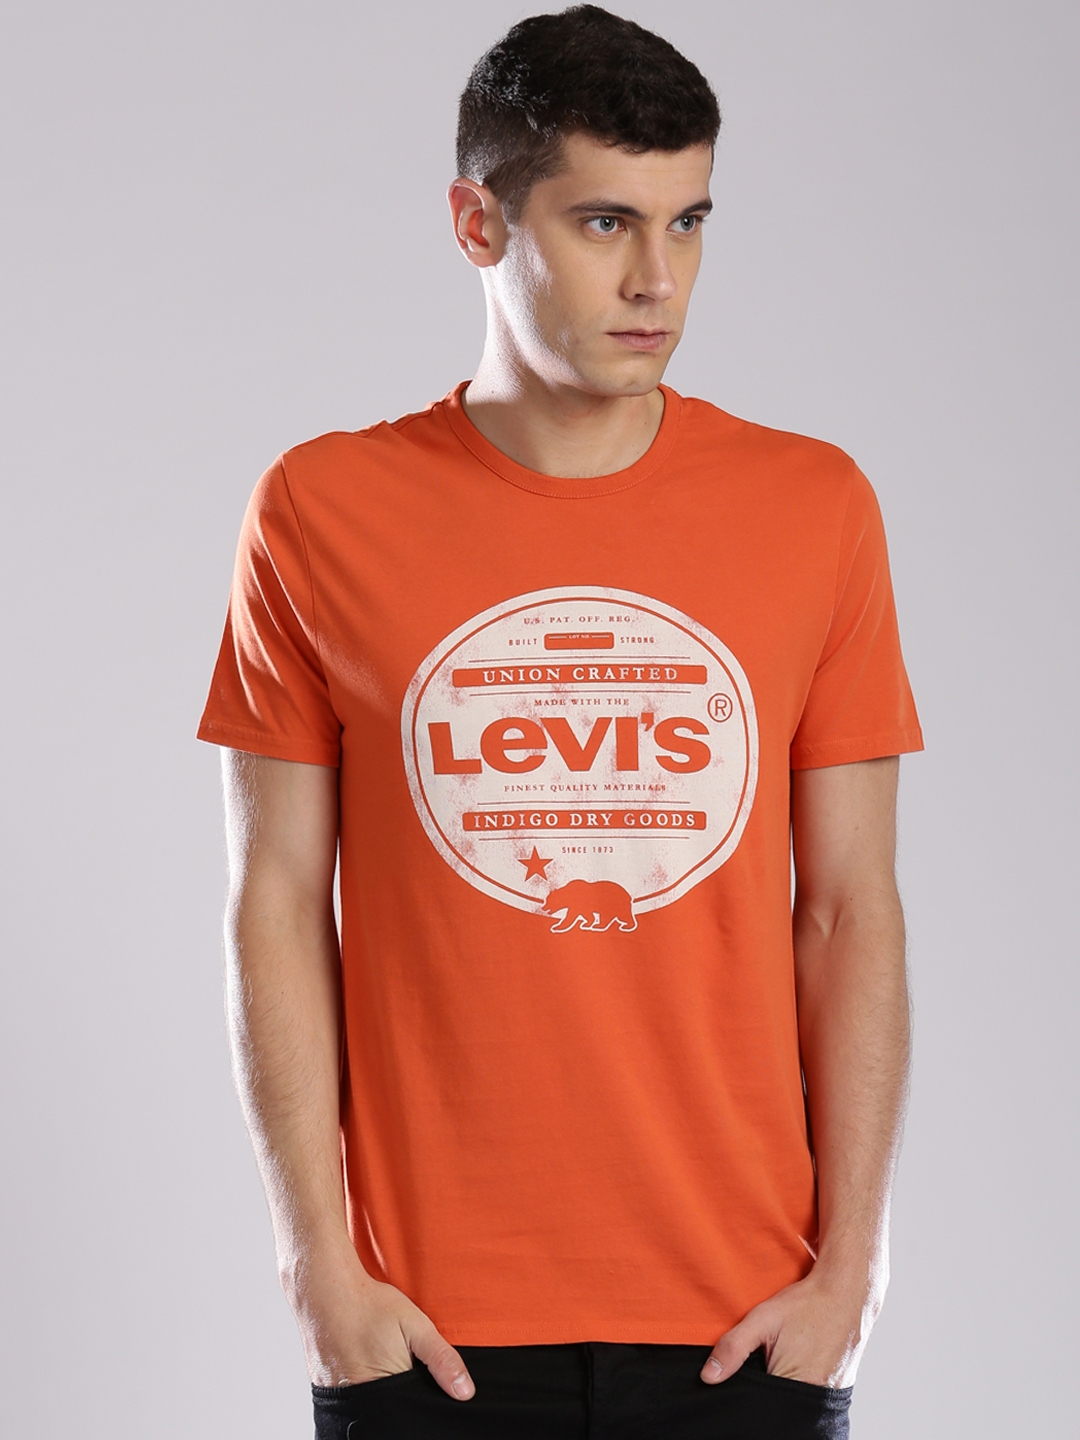 levis printed tshirt